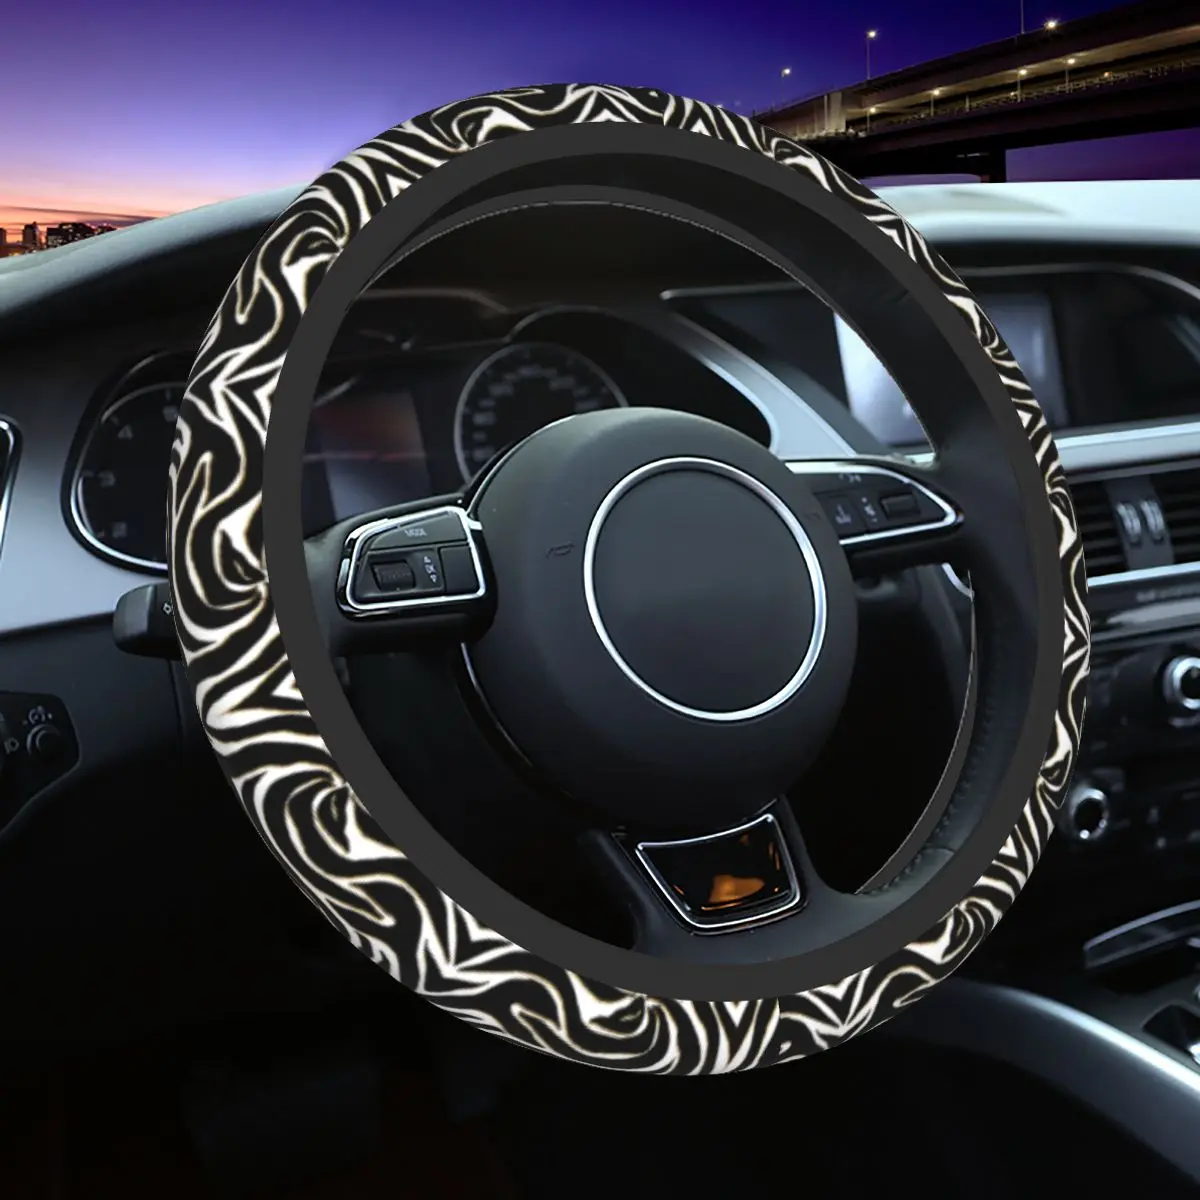 

38cm Car Steering Wheel Covers Elegant Black Gold Zebra White Animal Print Elastic Auto Decoration Elastische Car Accessories